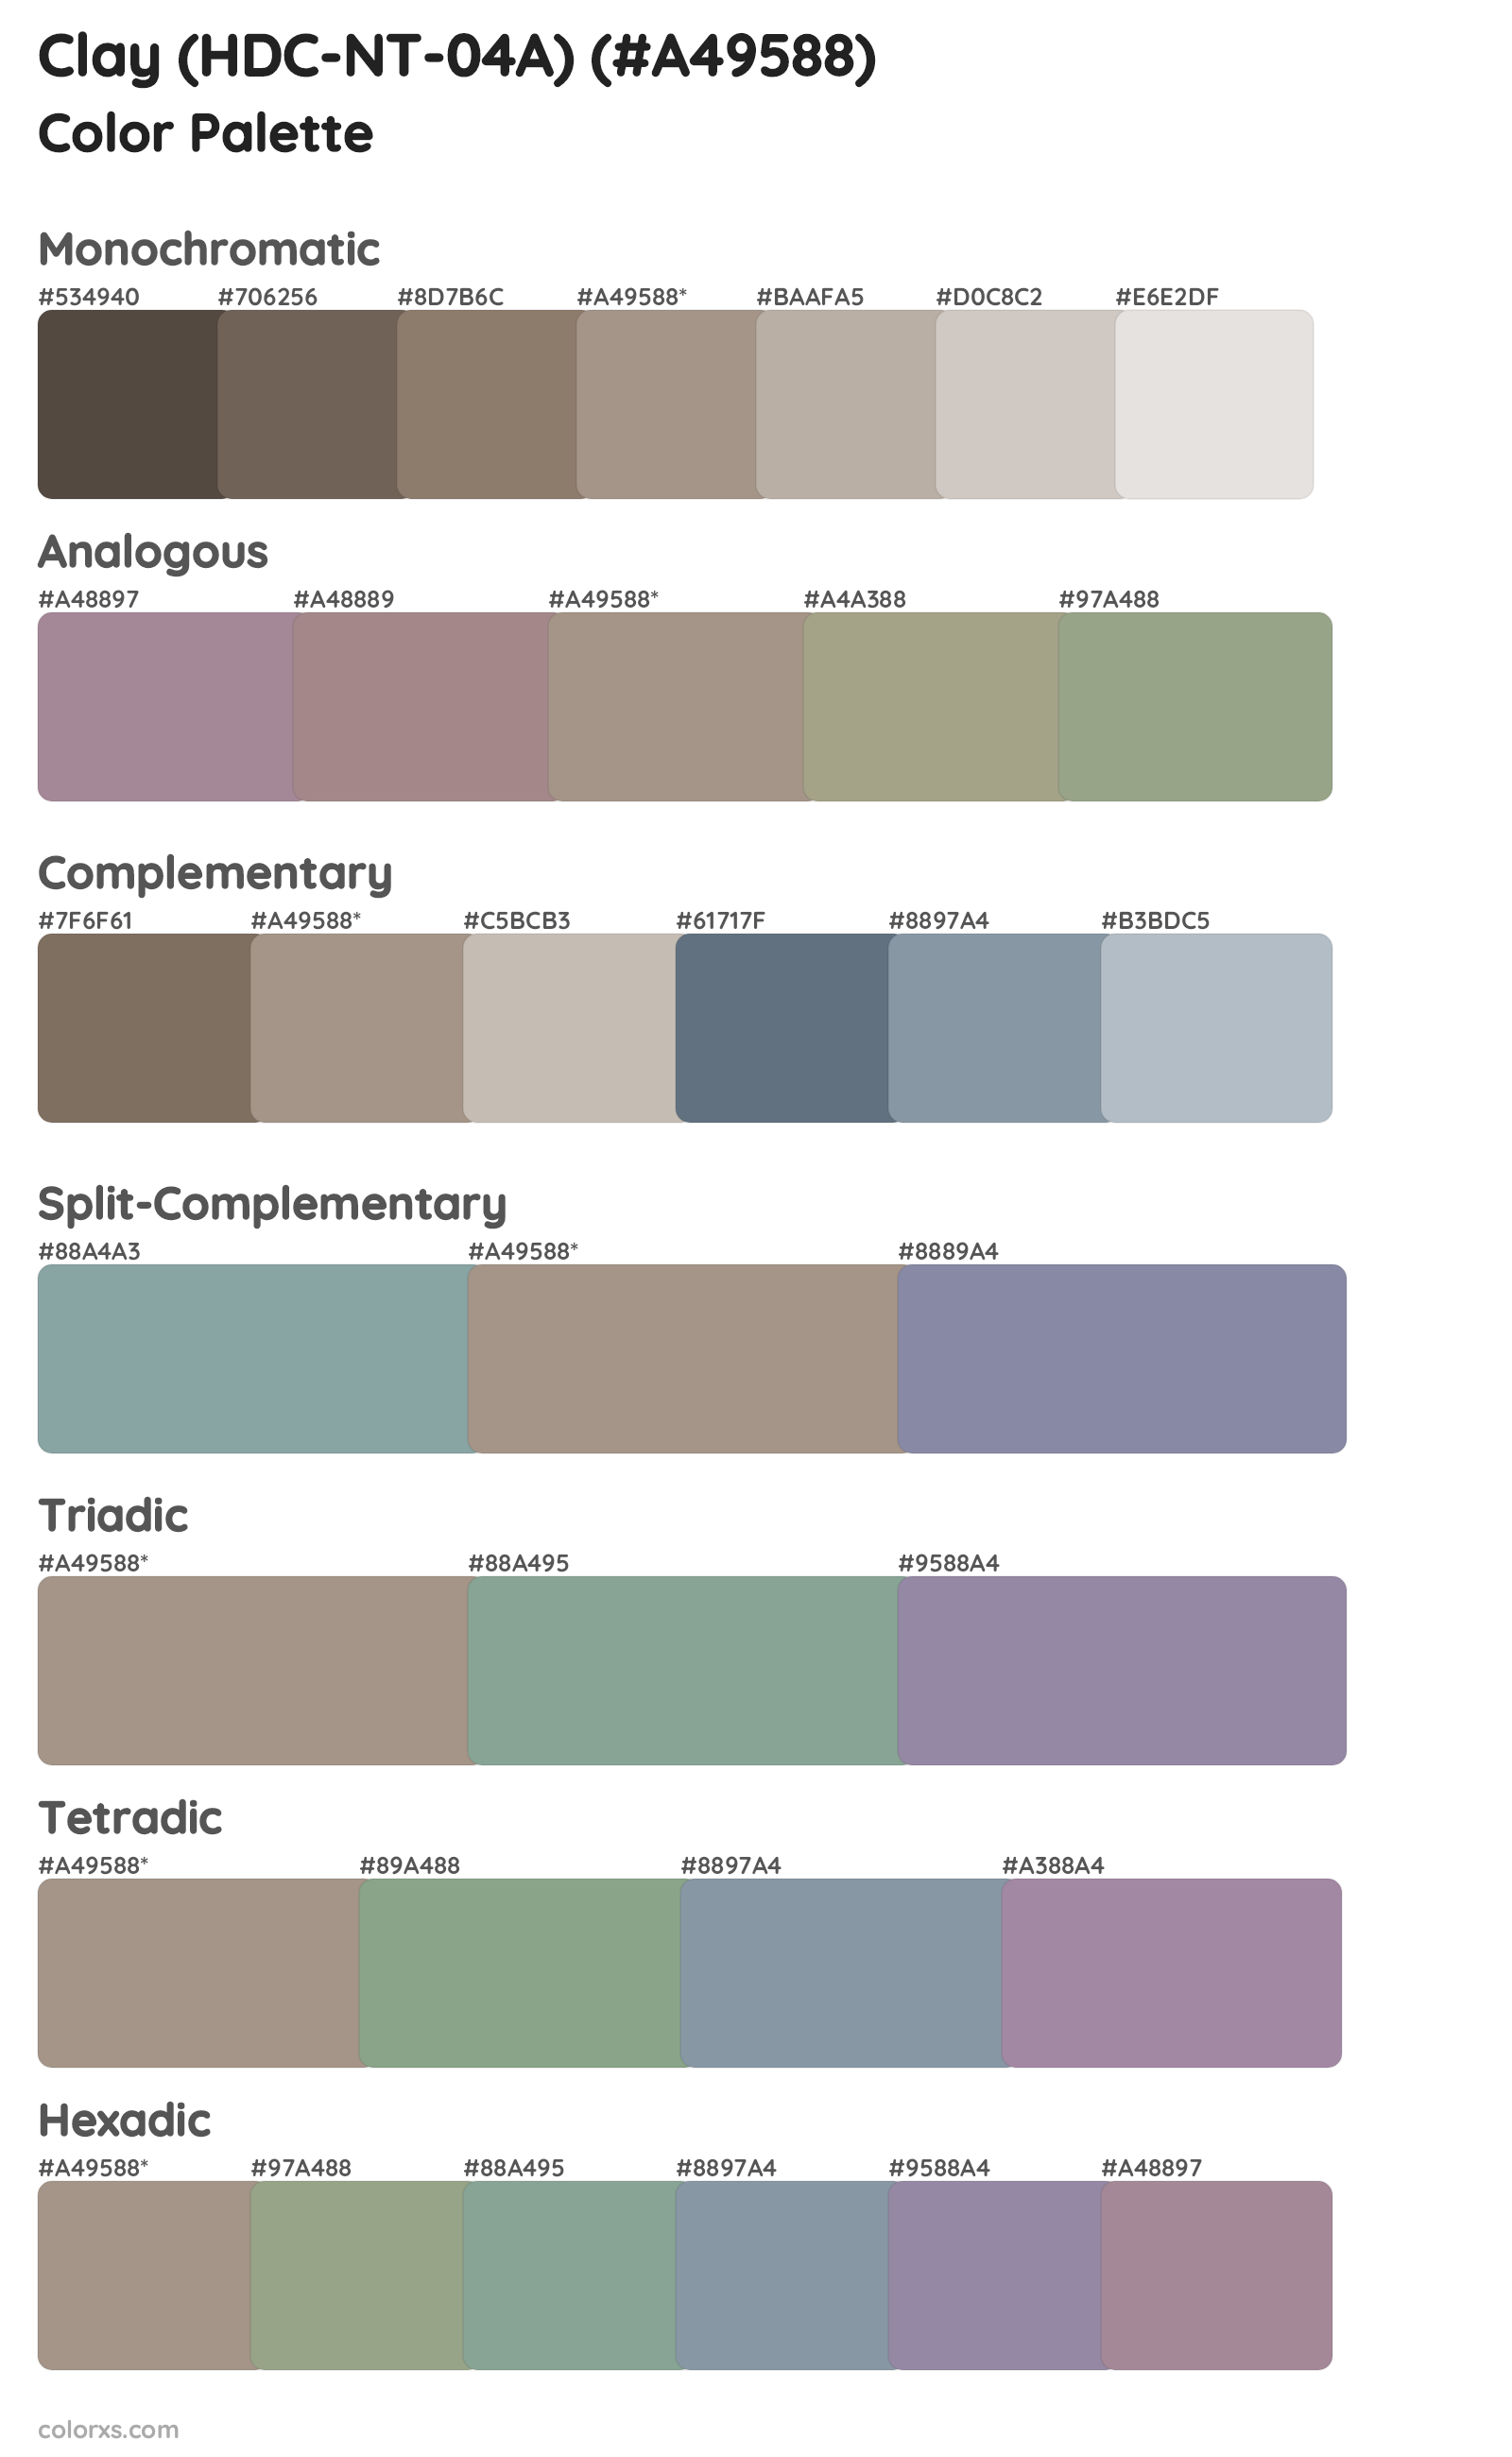 Clay (HDC-NT-04A) Color Scheme Palettes